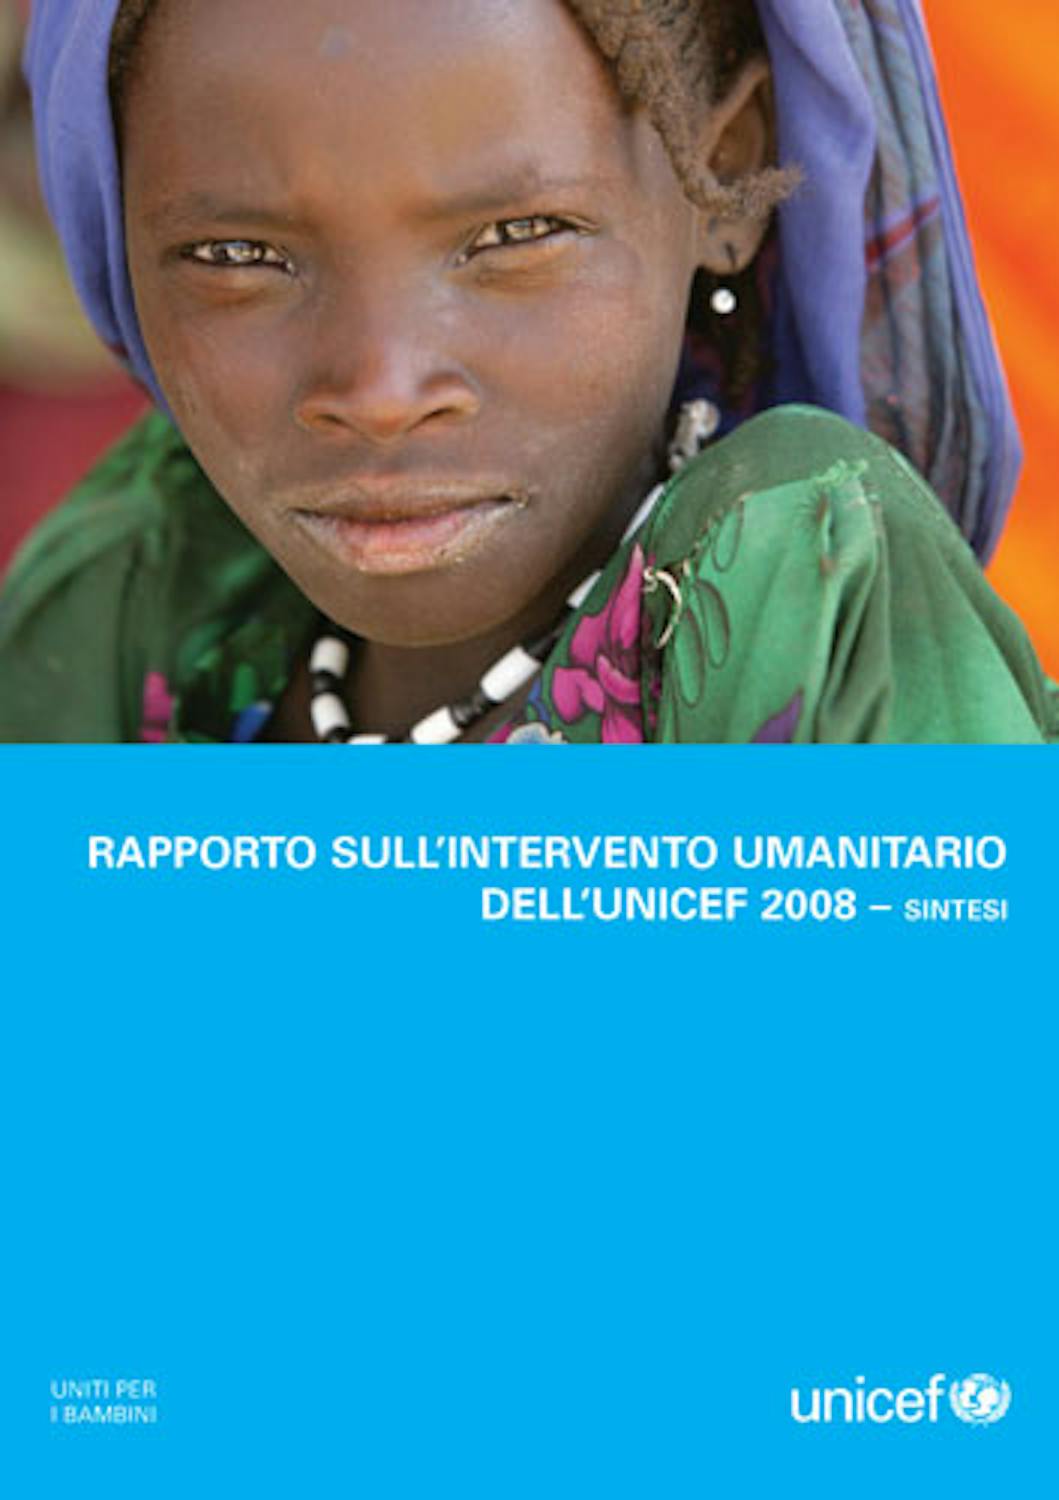 Rapporto sull'intervento umanitario 2008 dell'UNICEF